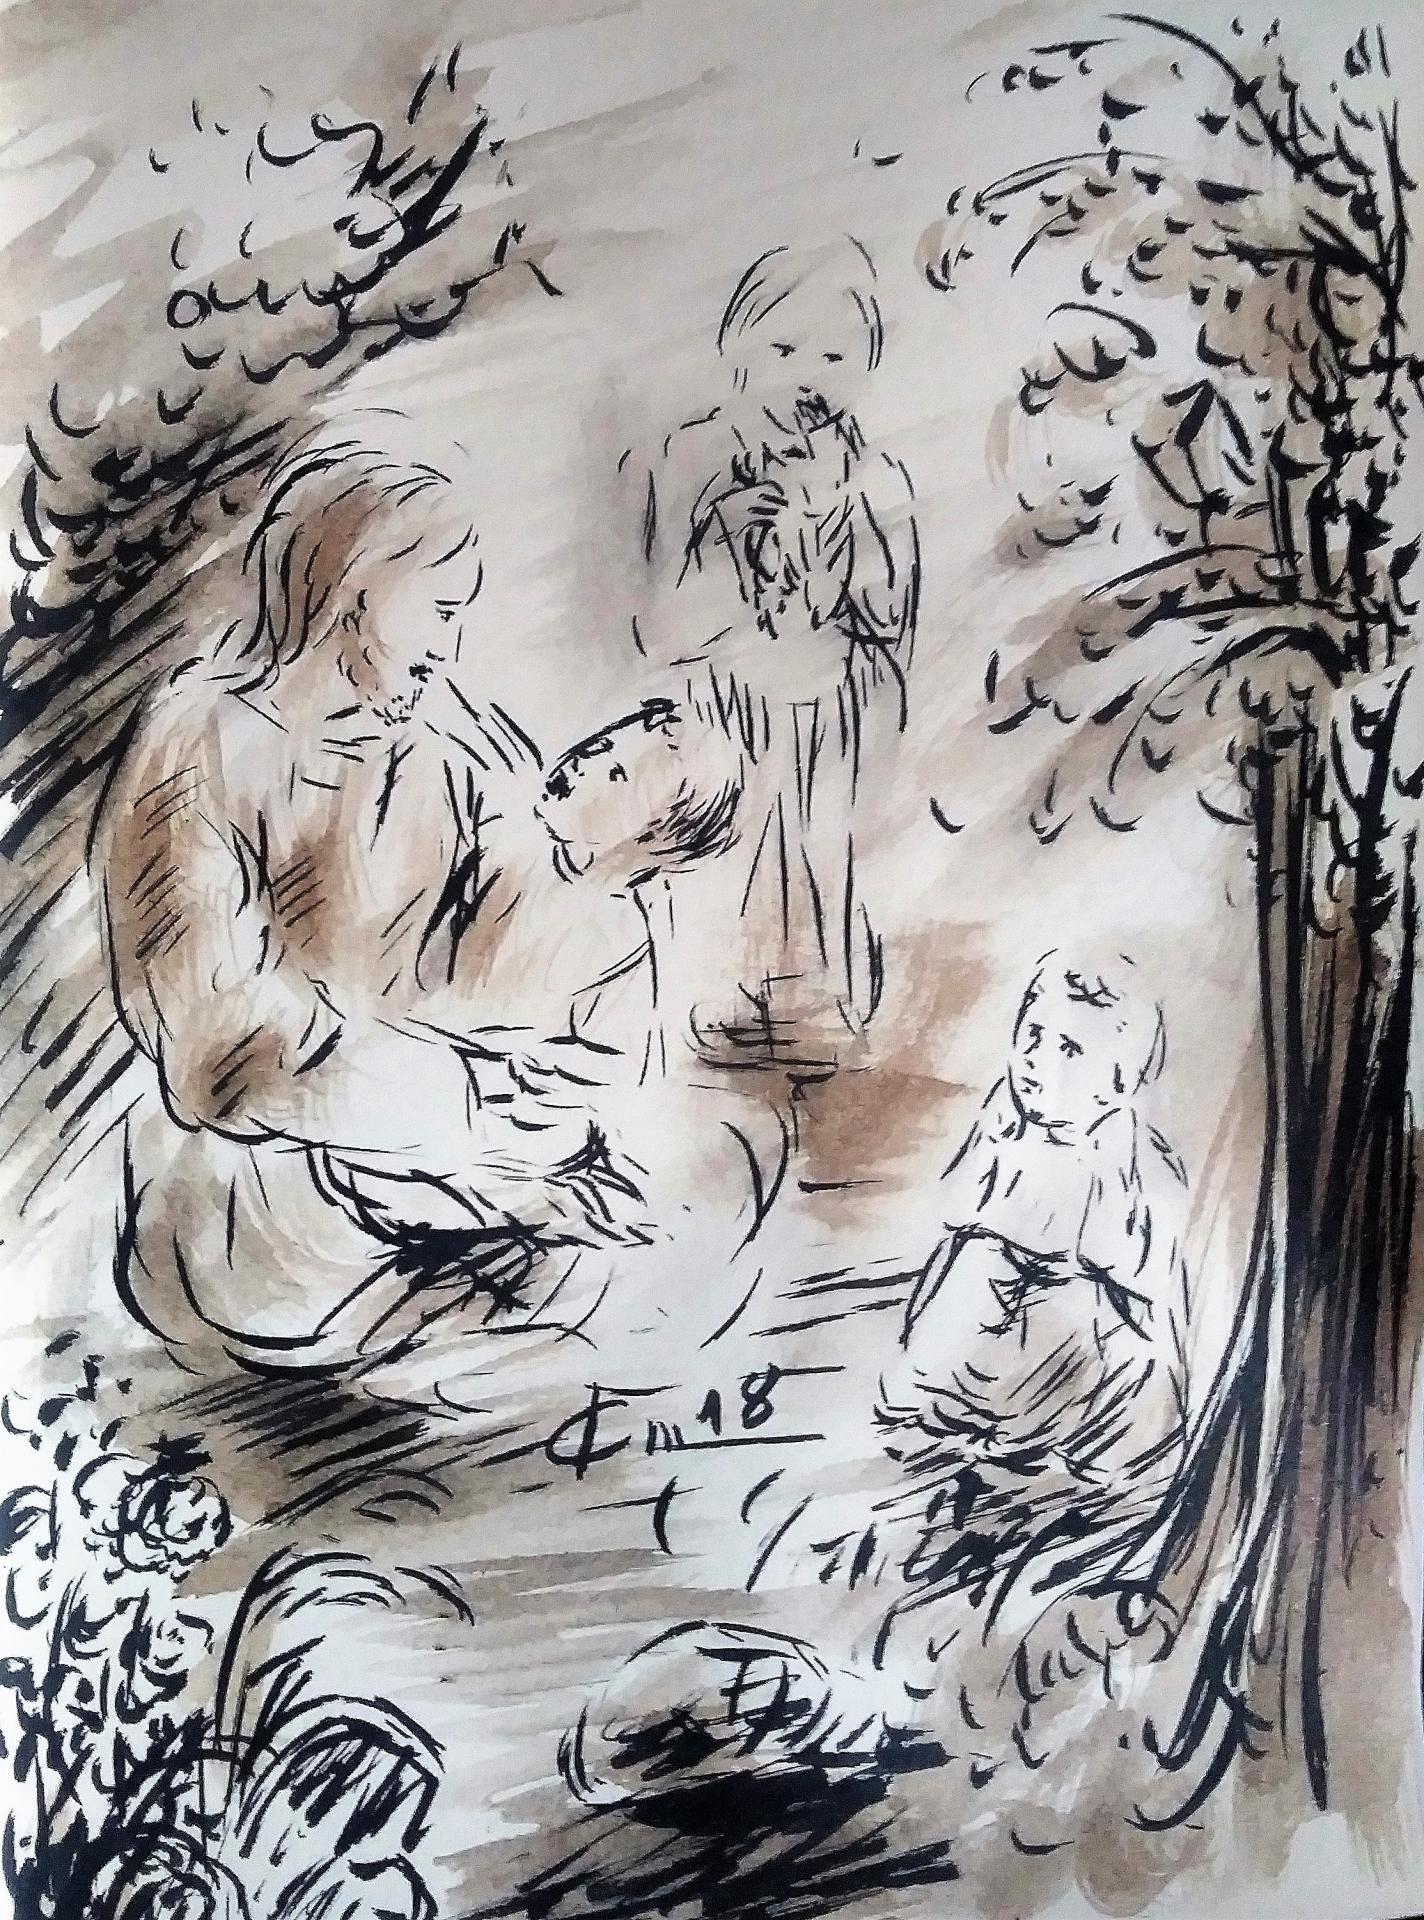 26 mai 2018 evangile du jour illustre par un dessin au lavis de jean joseph chevalier